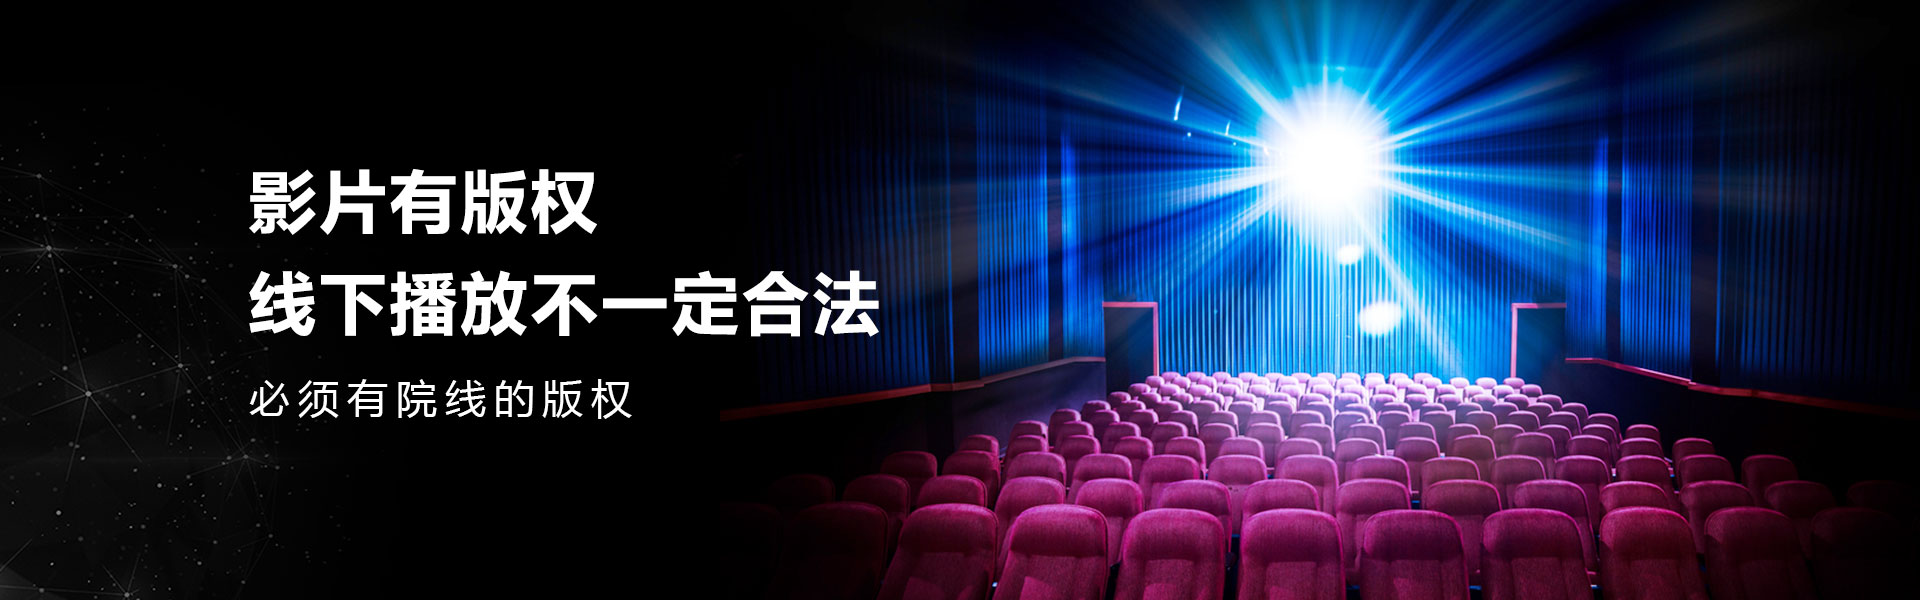 广州富邦为商业电影院、多功能会议影厅、家庭私人影院、公益影院等提供院线版权